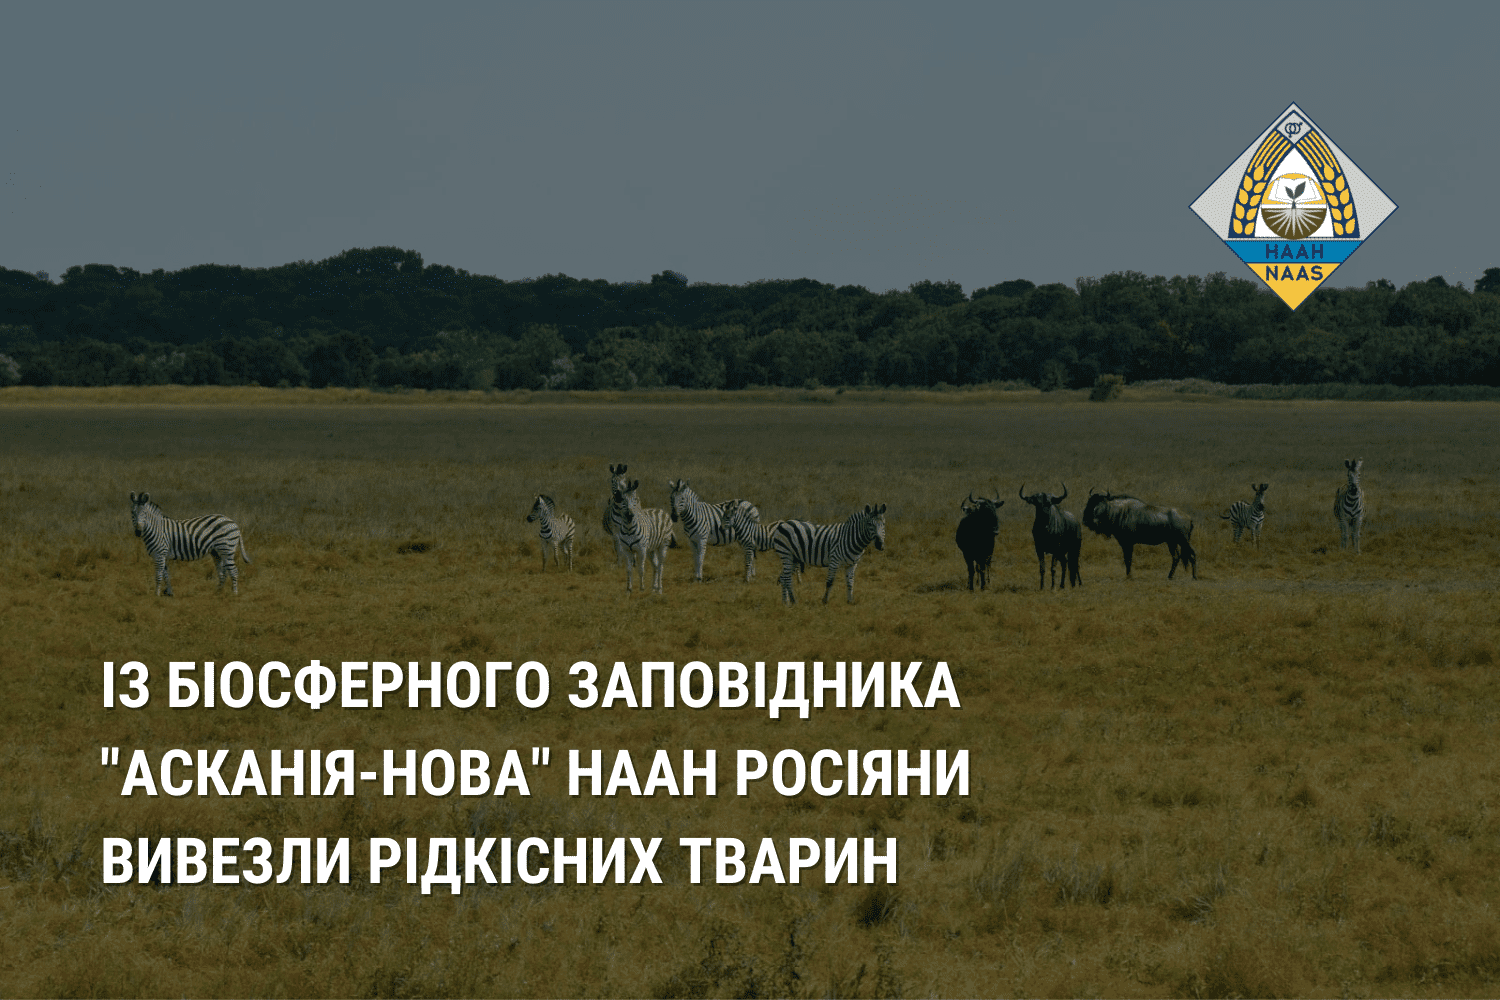 Із біосферного заповідника "Асканія-Нова" НААН росіяни вивезли рідкісних тварин